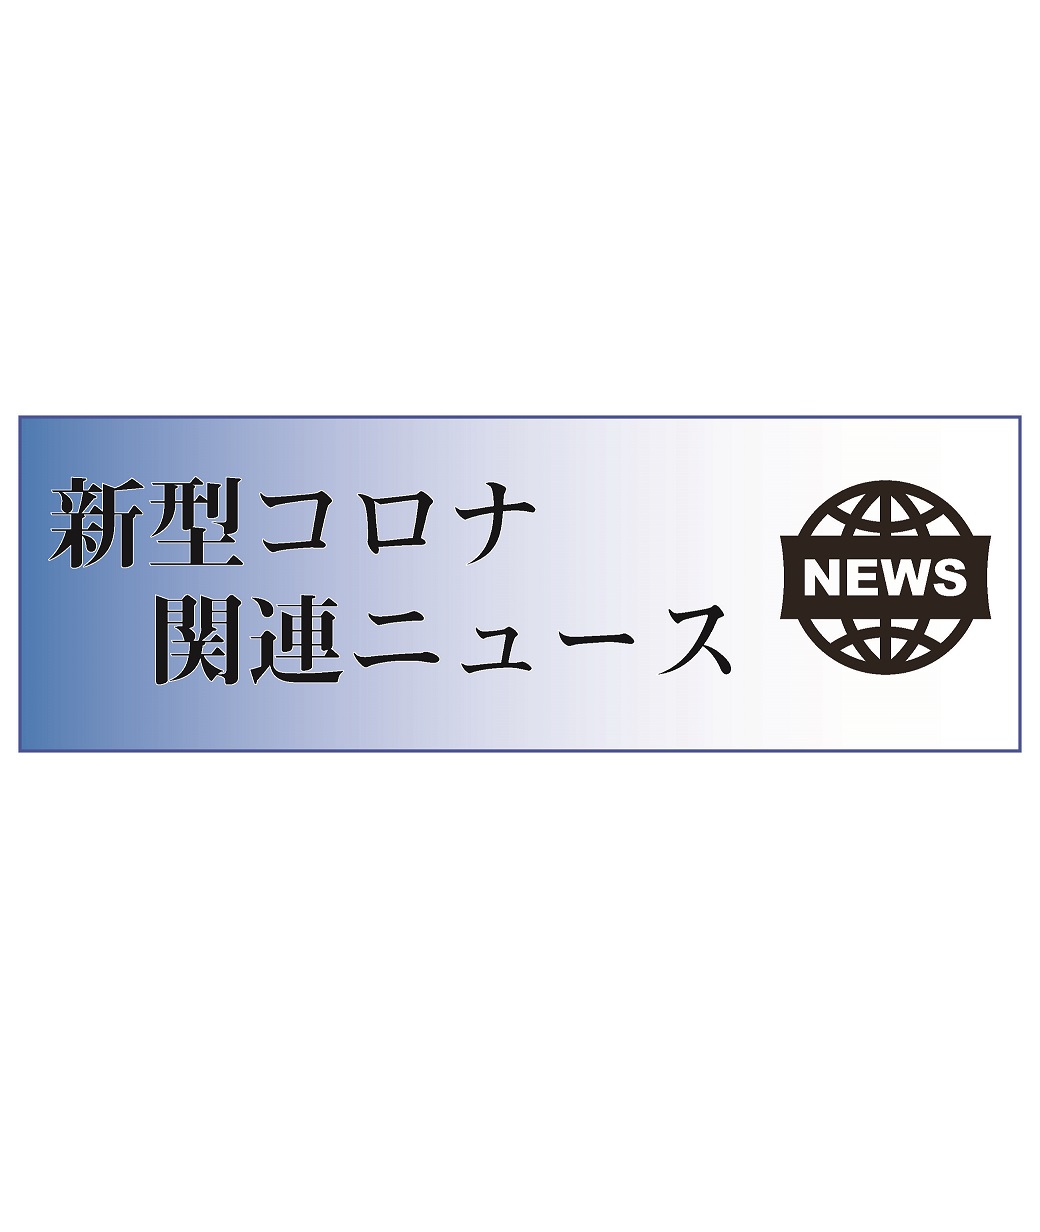 キット デンカ 抗原 検査 【速報】デンカ 新型コロナ抗原検査薬発売